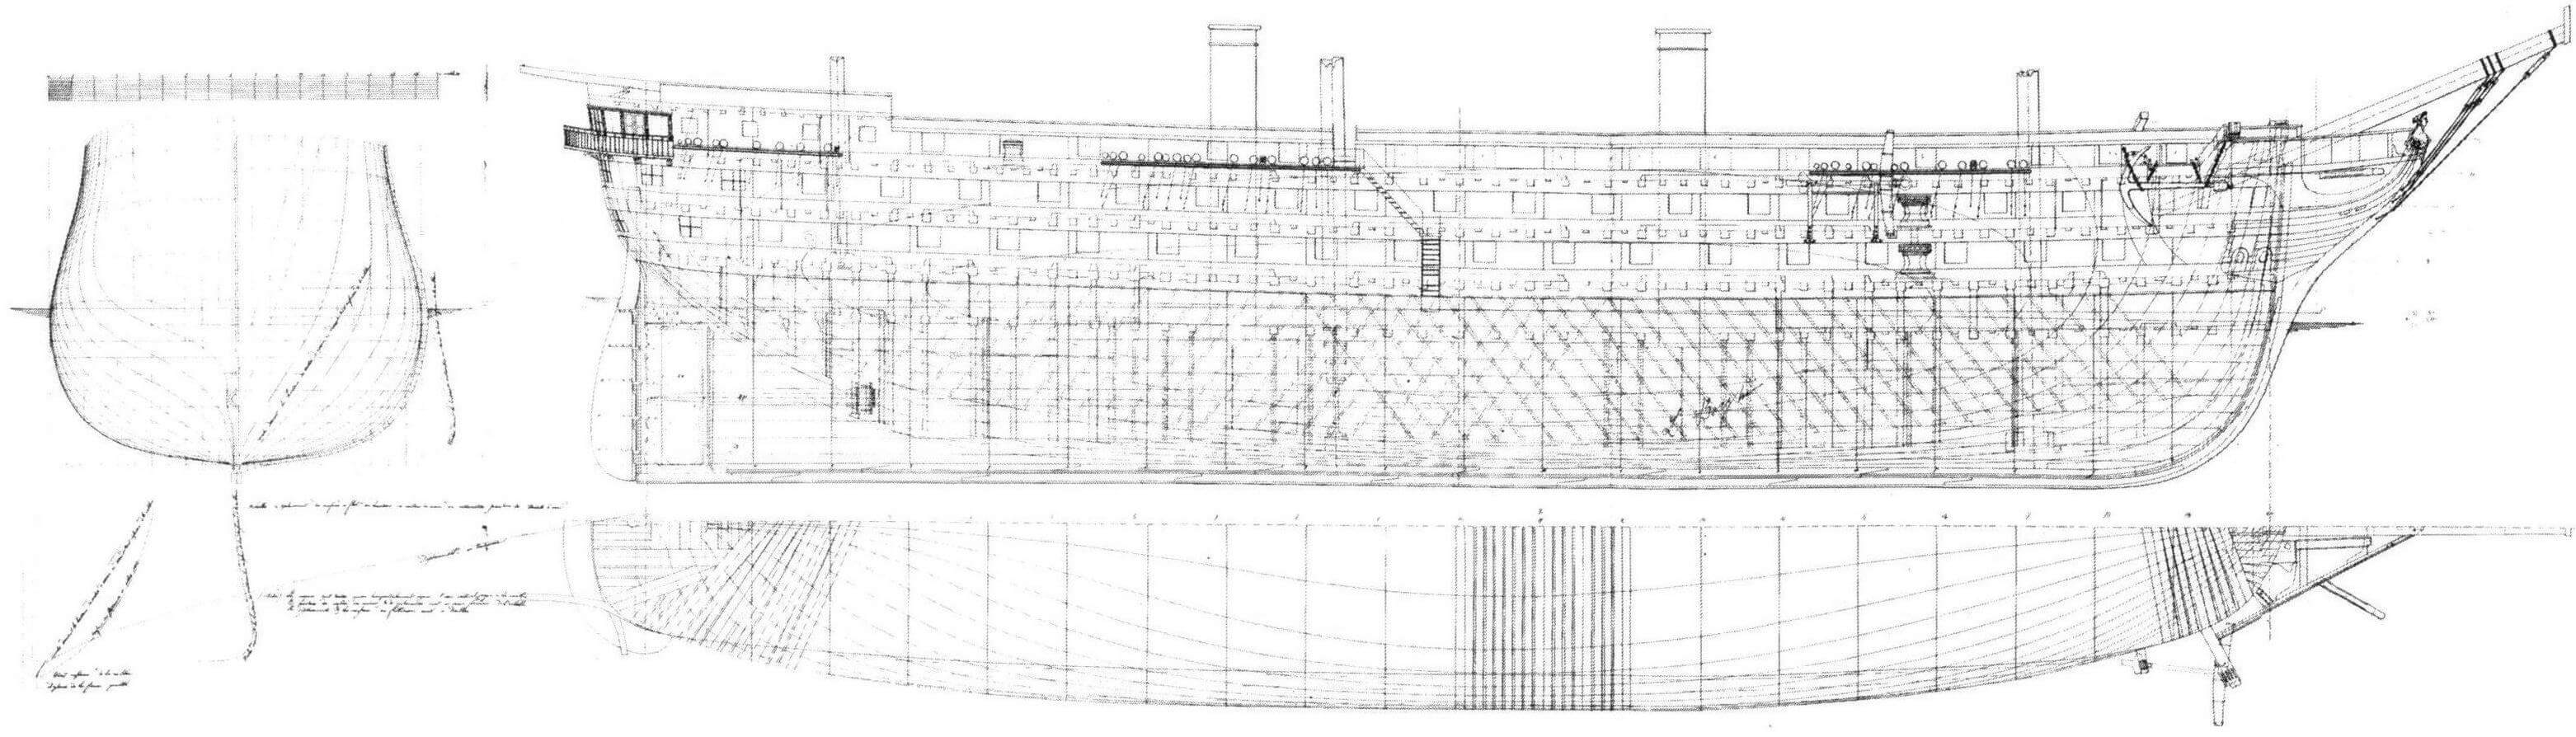 Теоретический чертеж винтового линейного корабля «Наполеон»